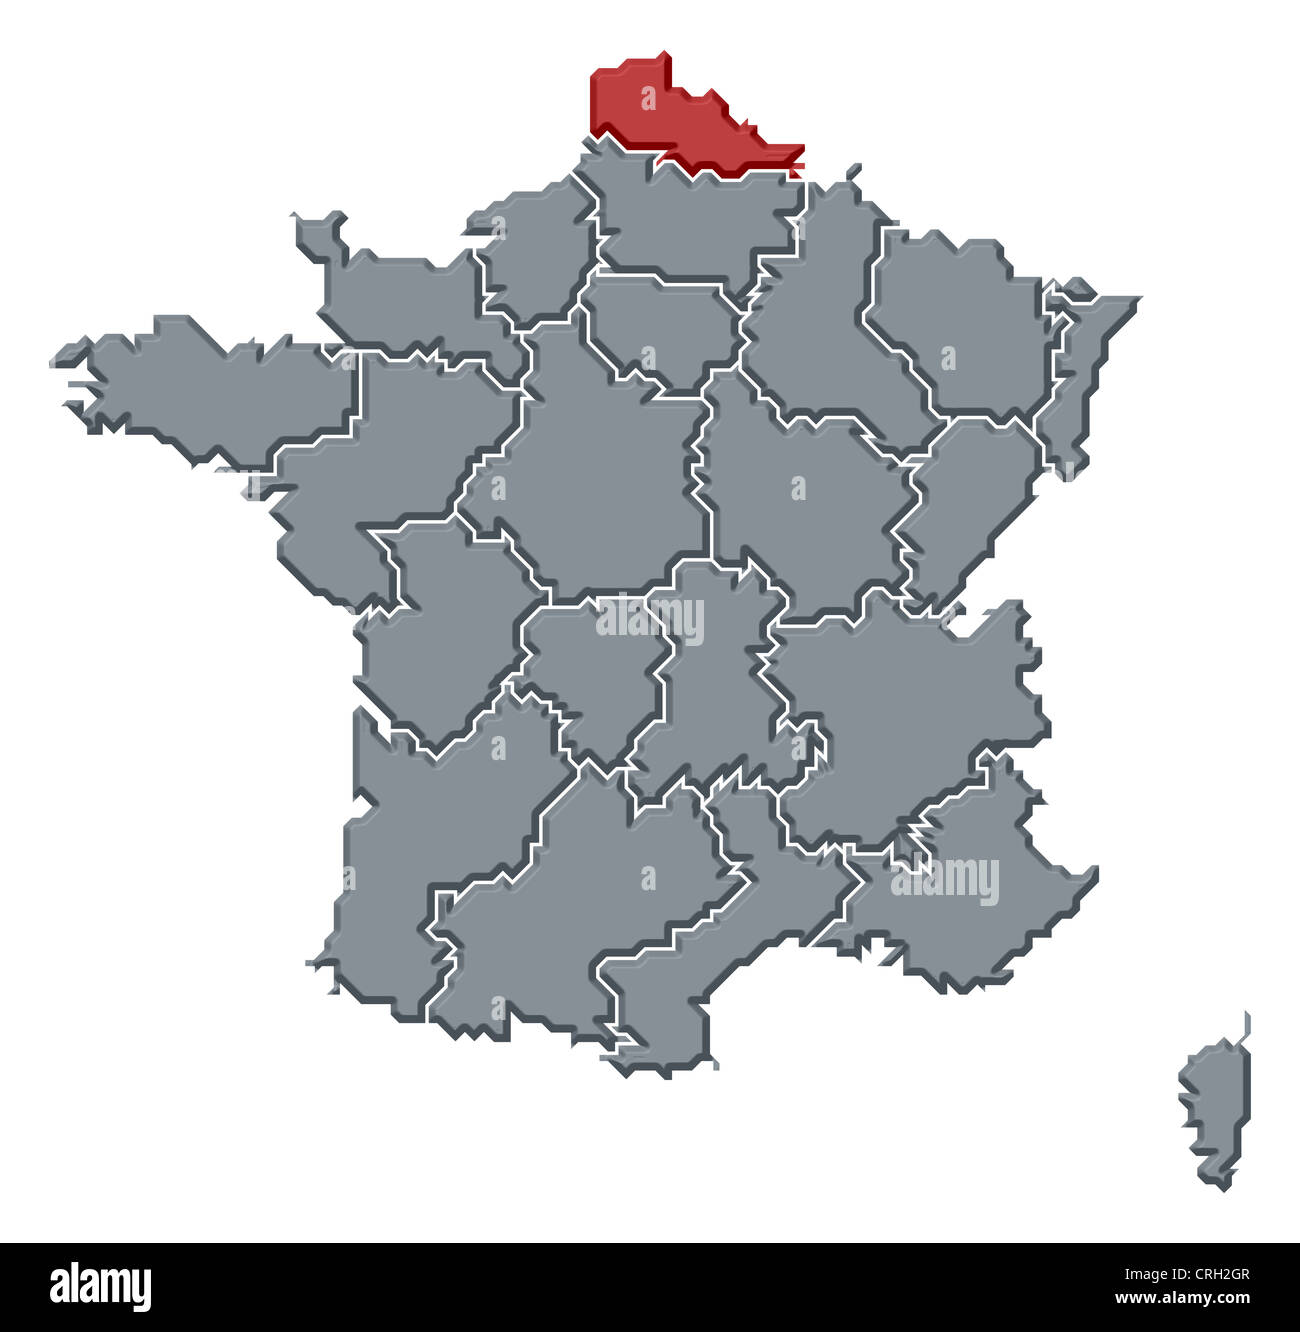 Carte politique de la France avec les diverses régions où le Nord-Pas-de-Calais est en surbrillance. Banque D'Images